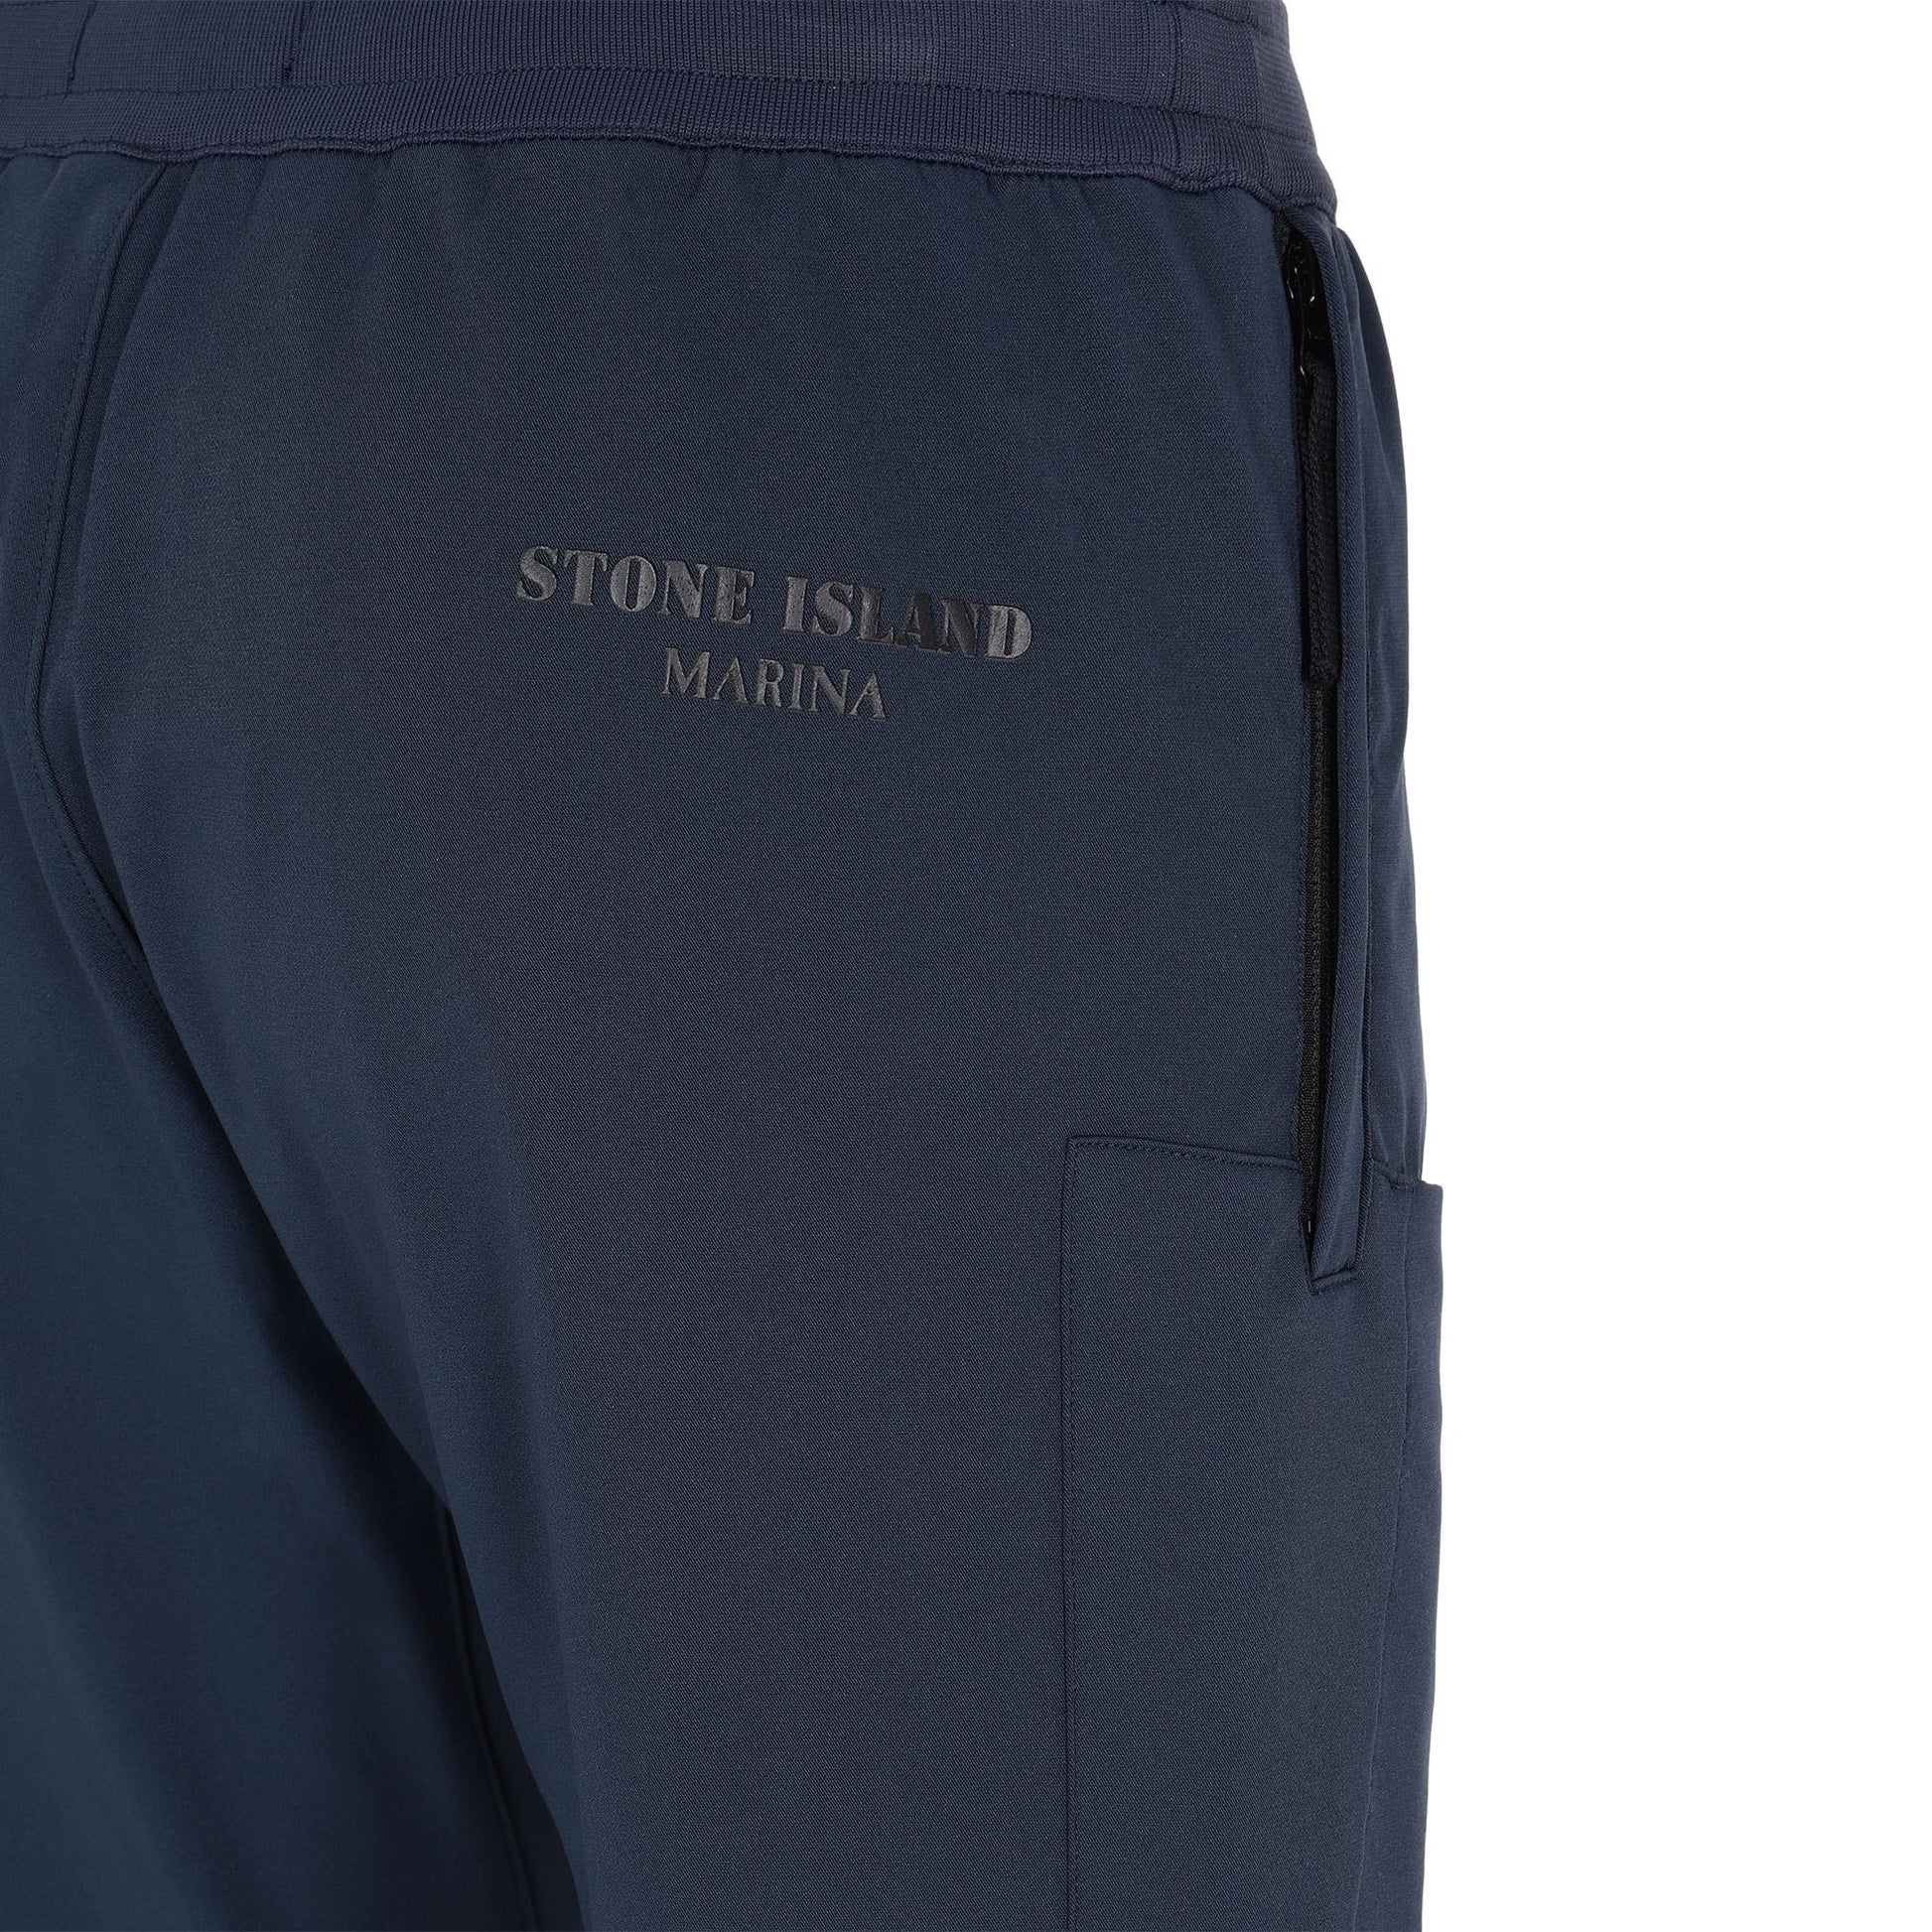 Stone Island Navy Marina Cargo Pants Cargo Pants Stone Island 